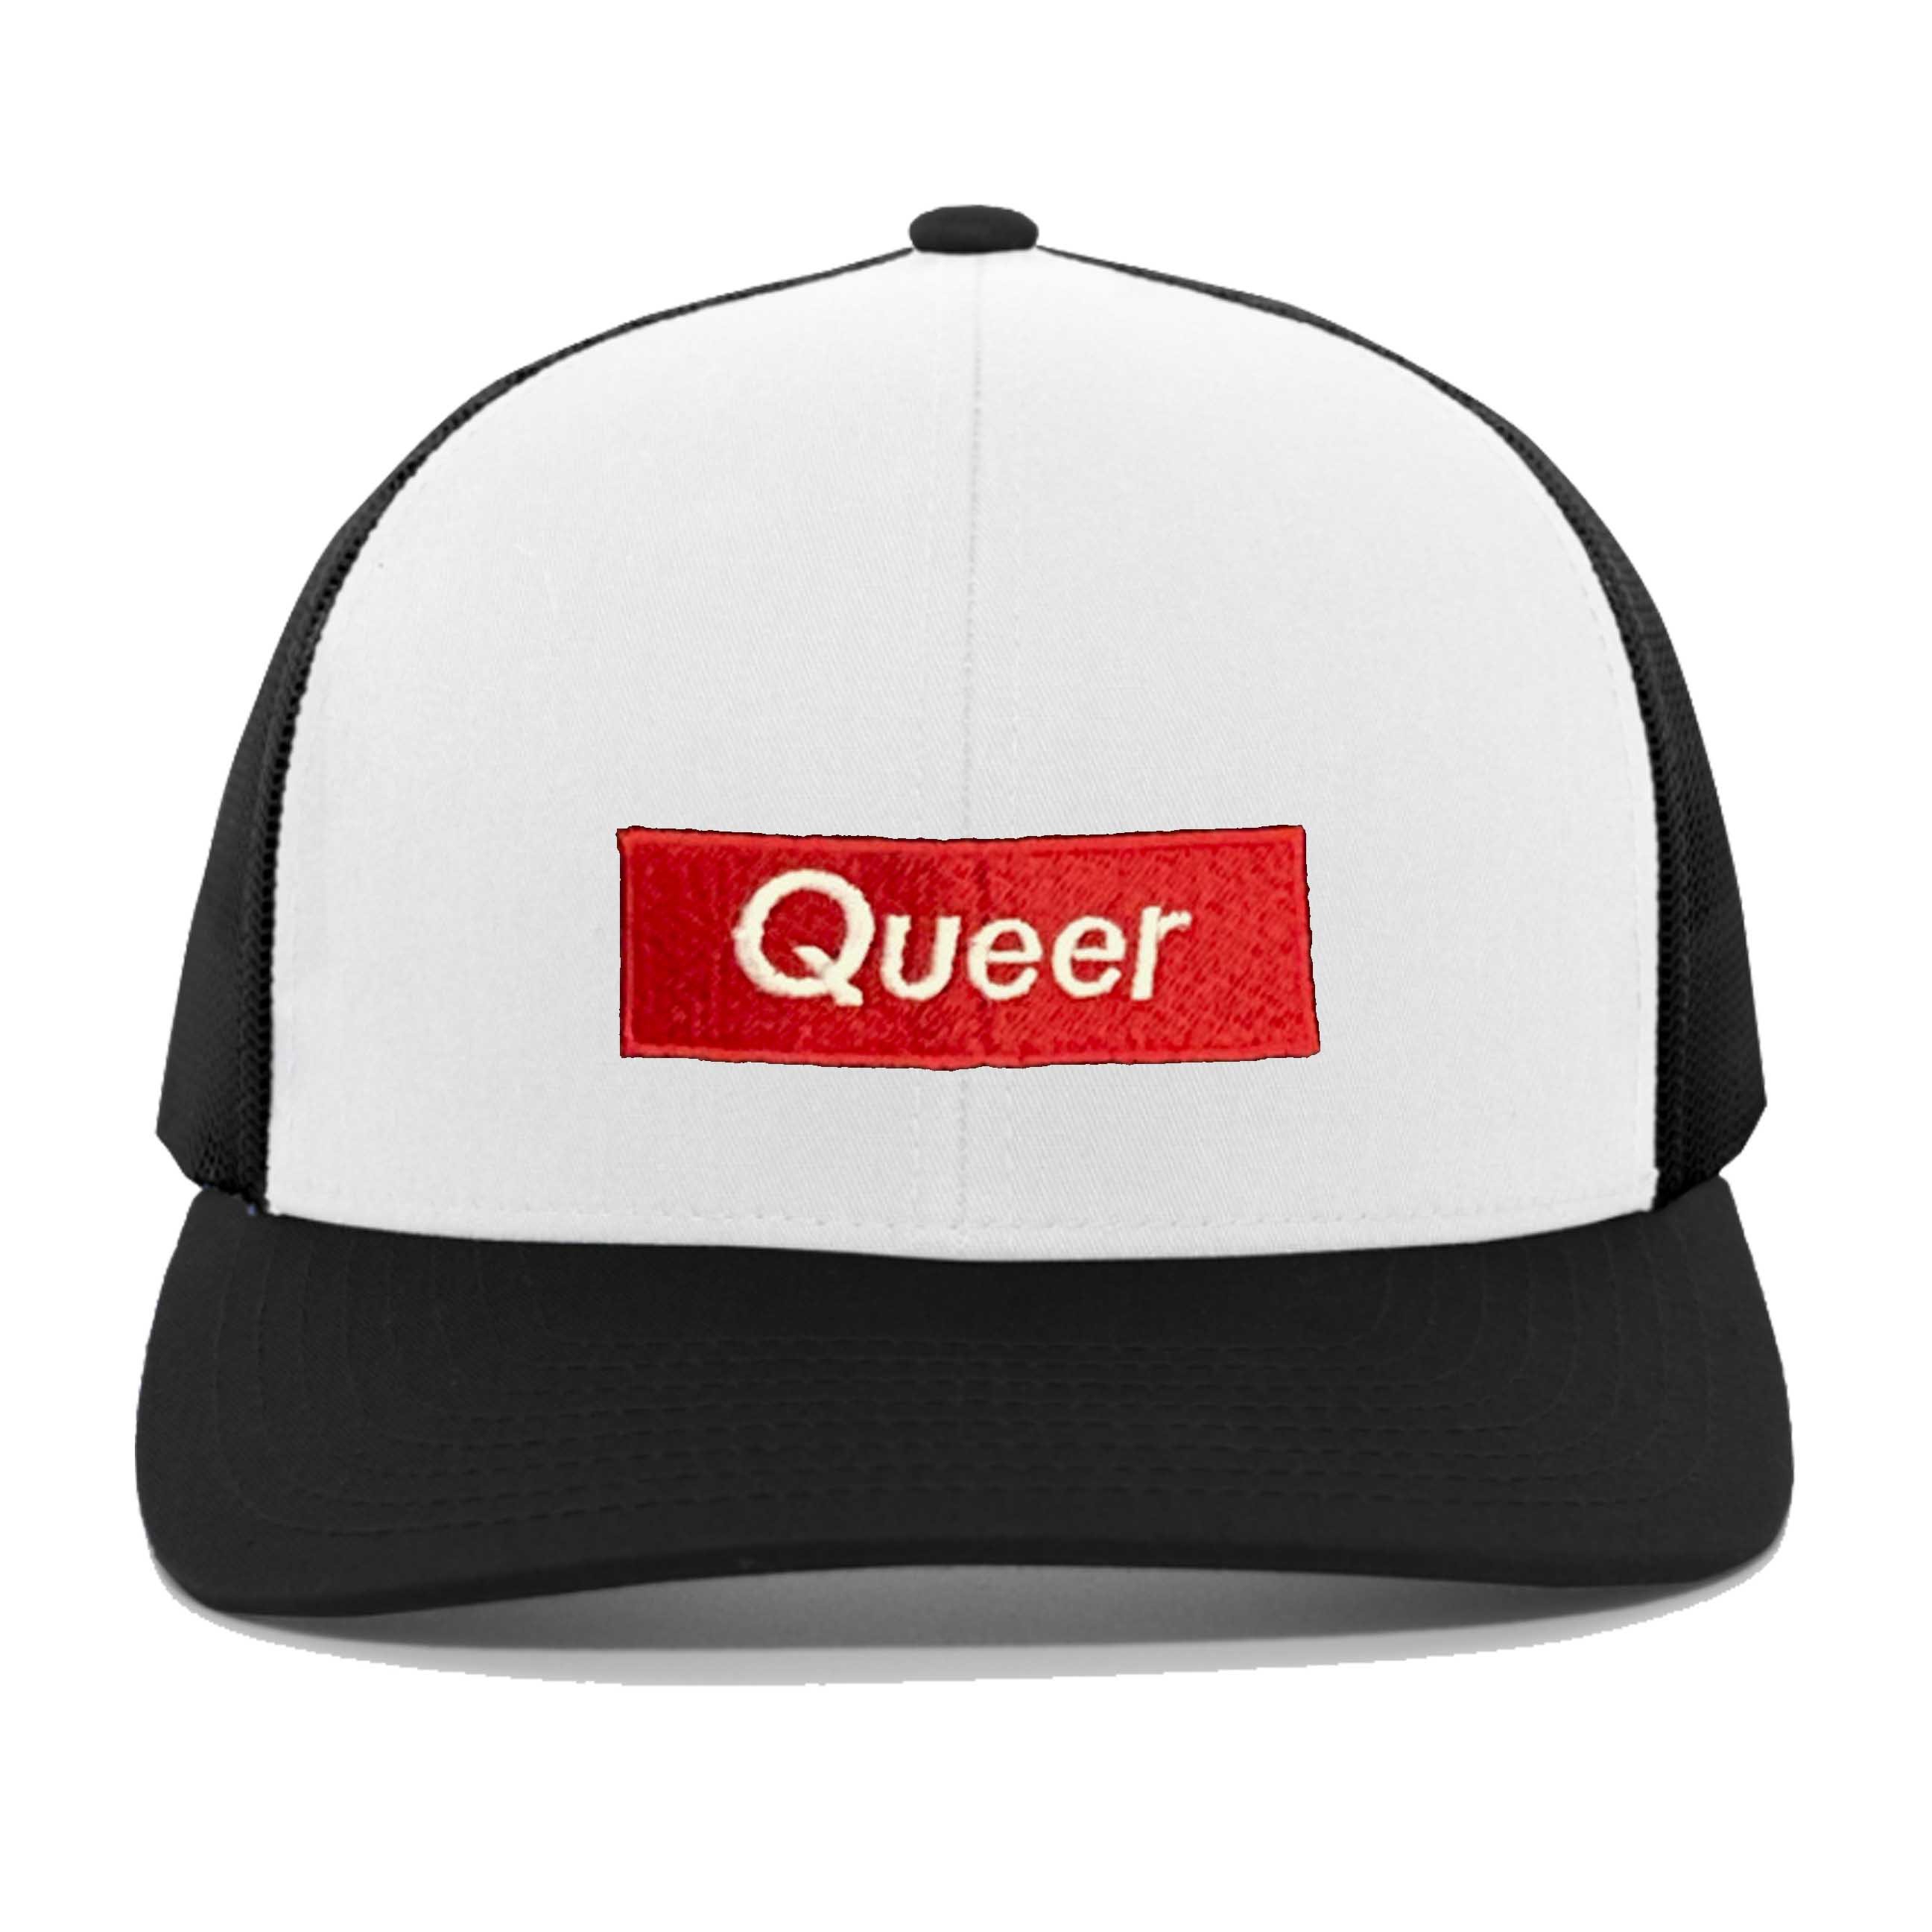 Adam's Nest Queer Trucker Mesh Snapback Hat white black